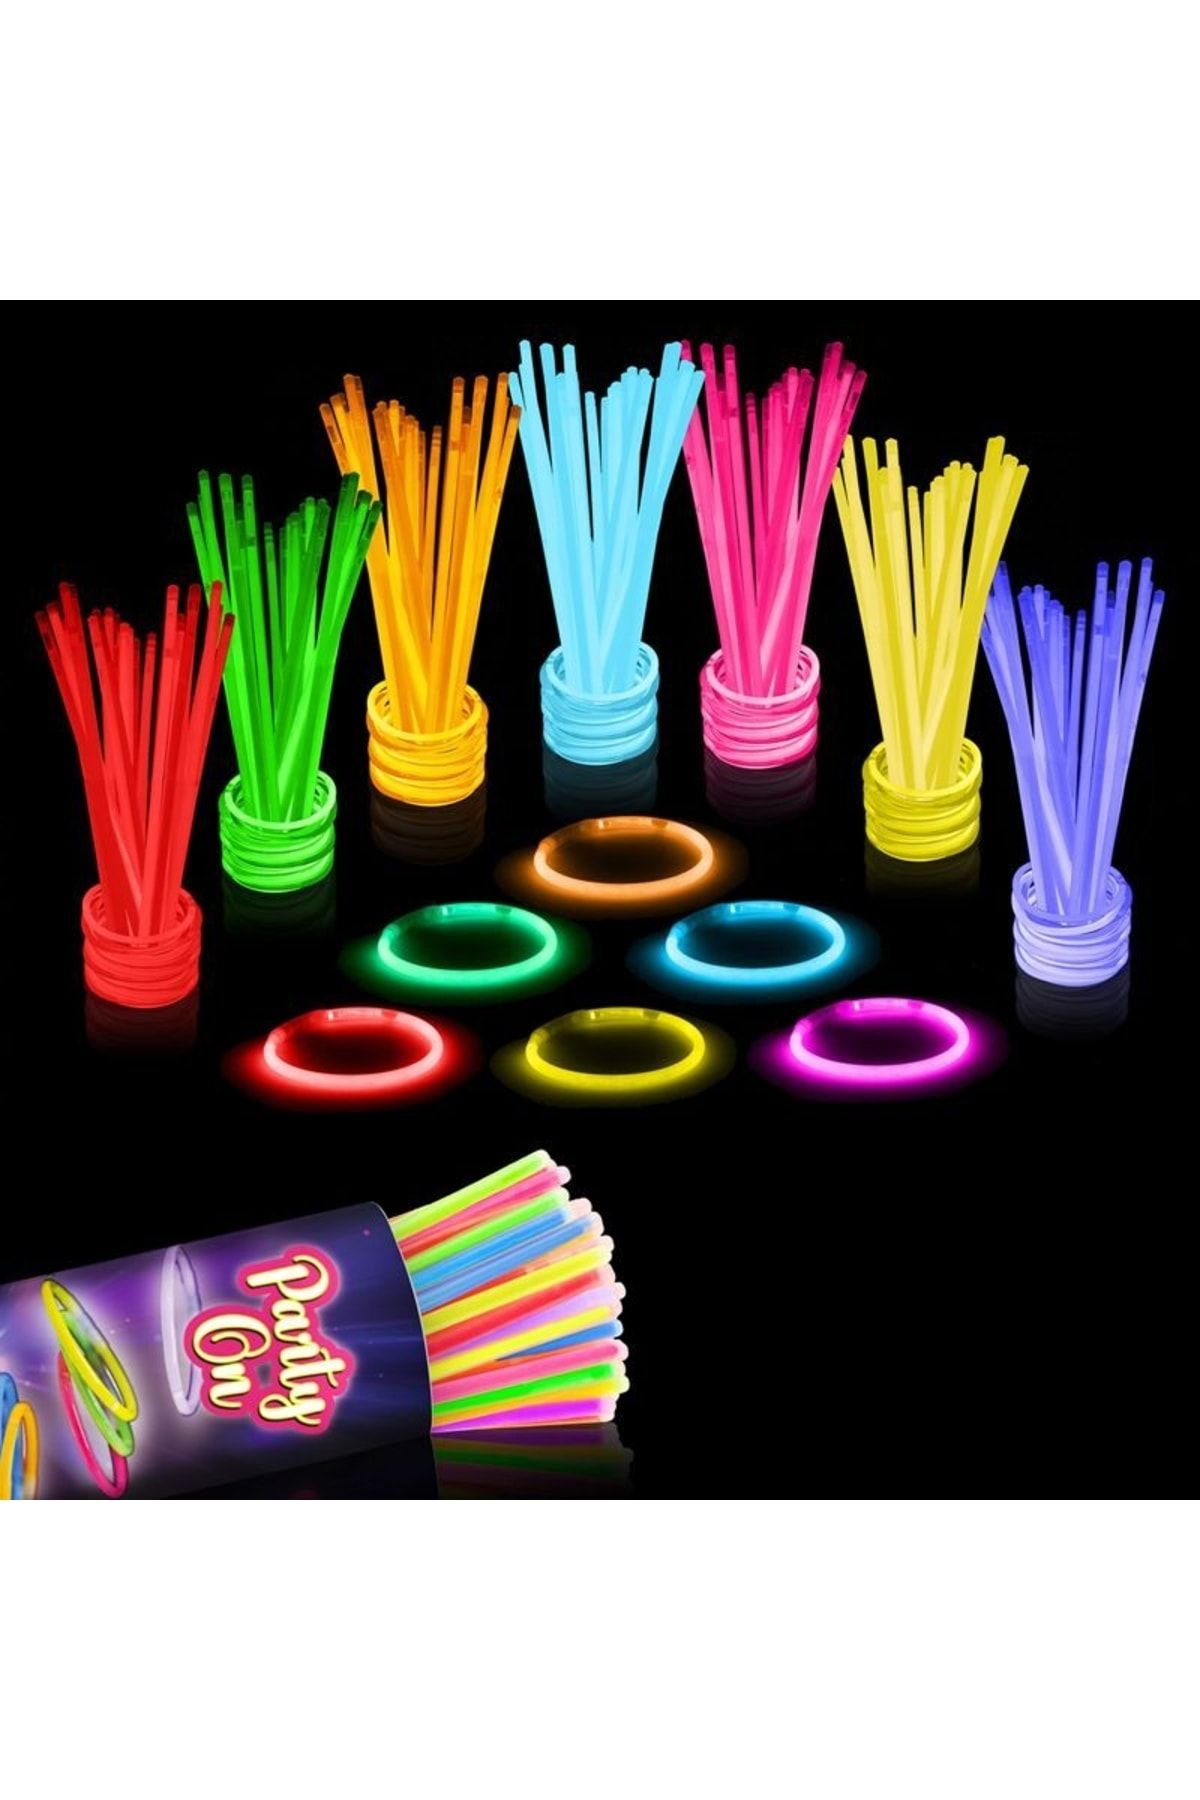 Kuzey Vıp Kalite 100 Adet Glow Stick Işıklı Fosfor Çubuk Neon Parti Işıkları Işıklı Bileklik Kolye Çubuk